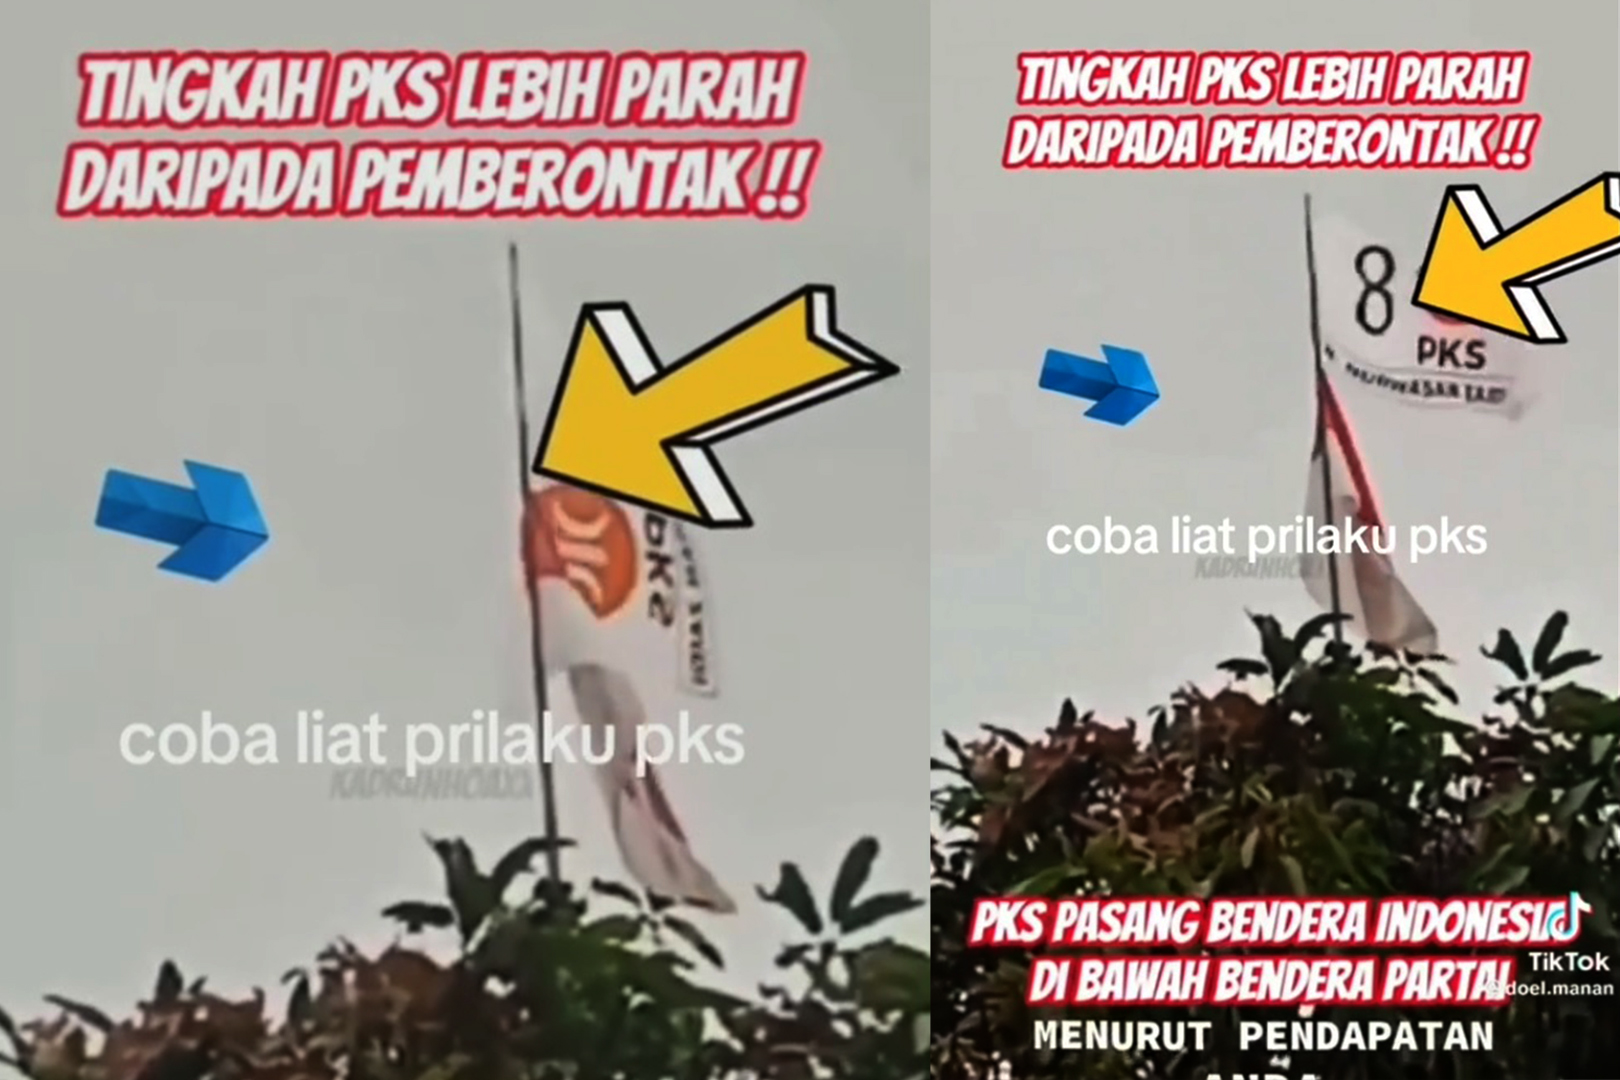 Viral, Bendera PKS 'Lebih Tinggi' dari Merah Putih, Caption: Lebih Parah Daripada Pemberontak!